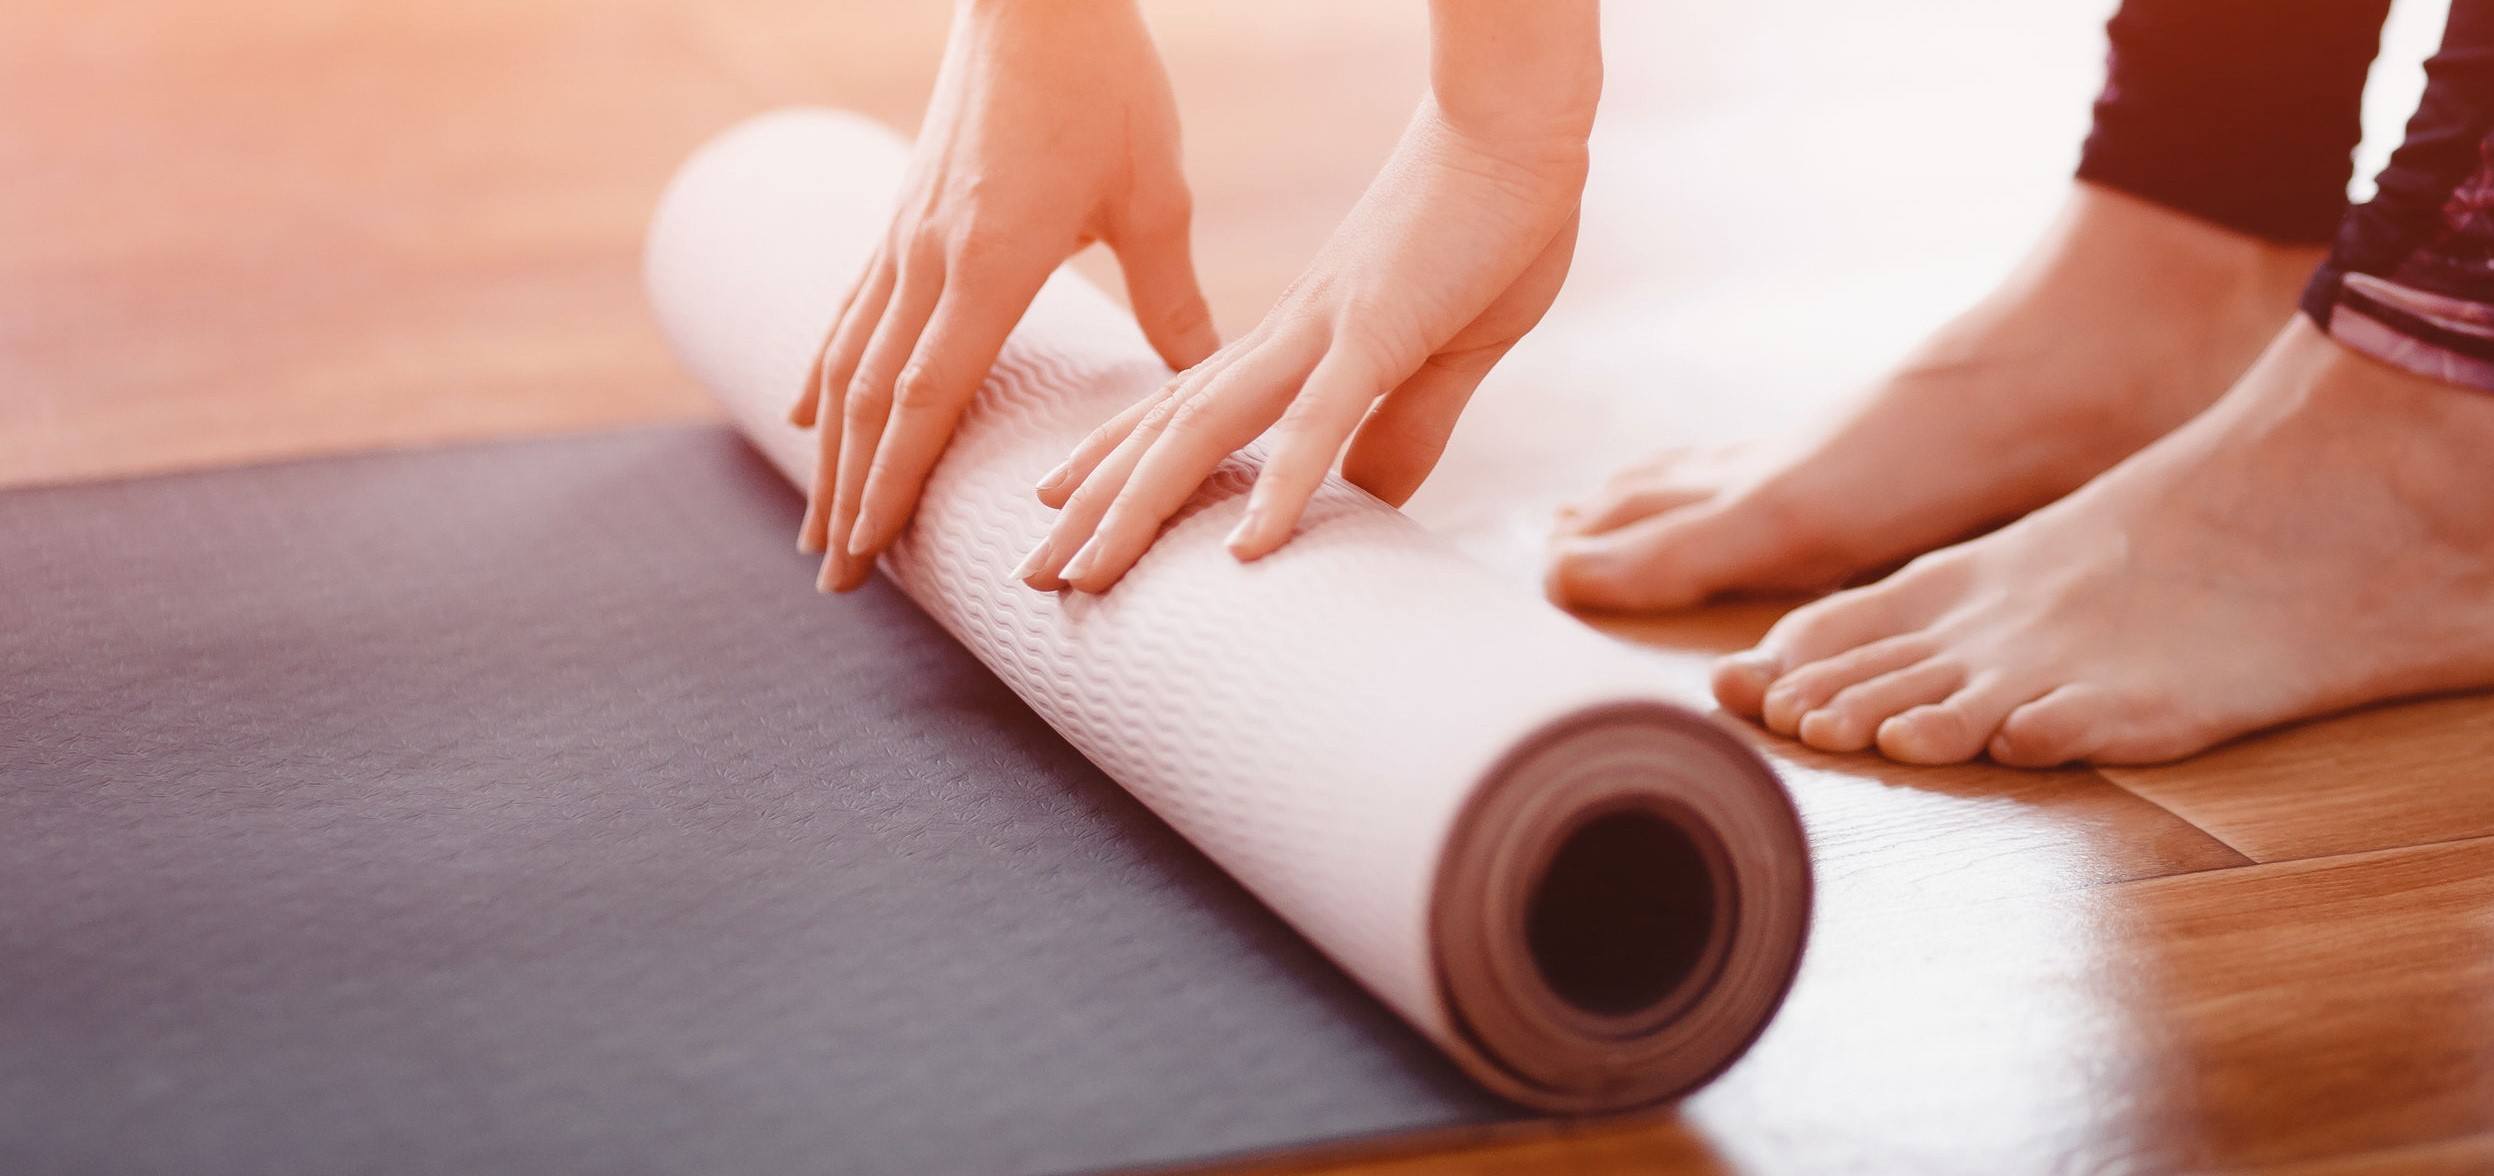 A yoga mat for beginner bodyweight training